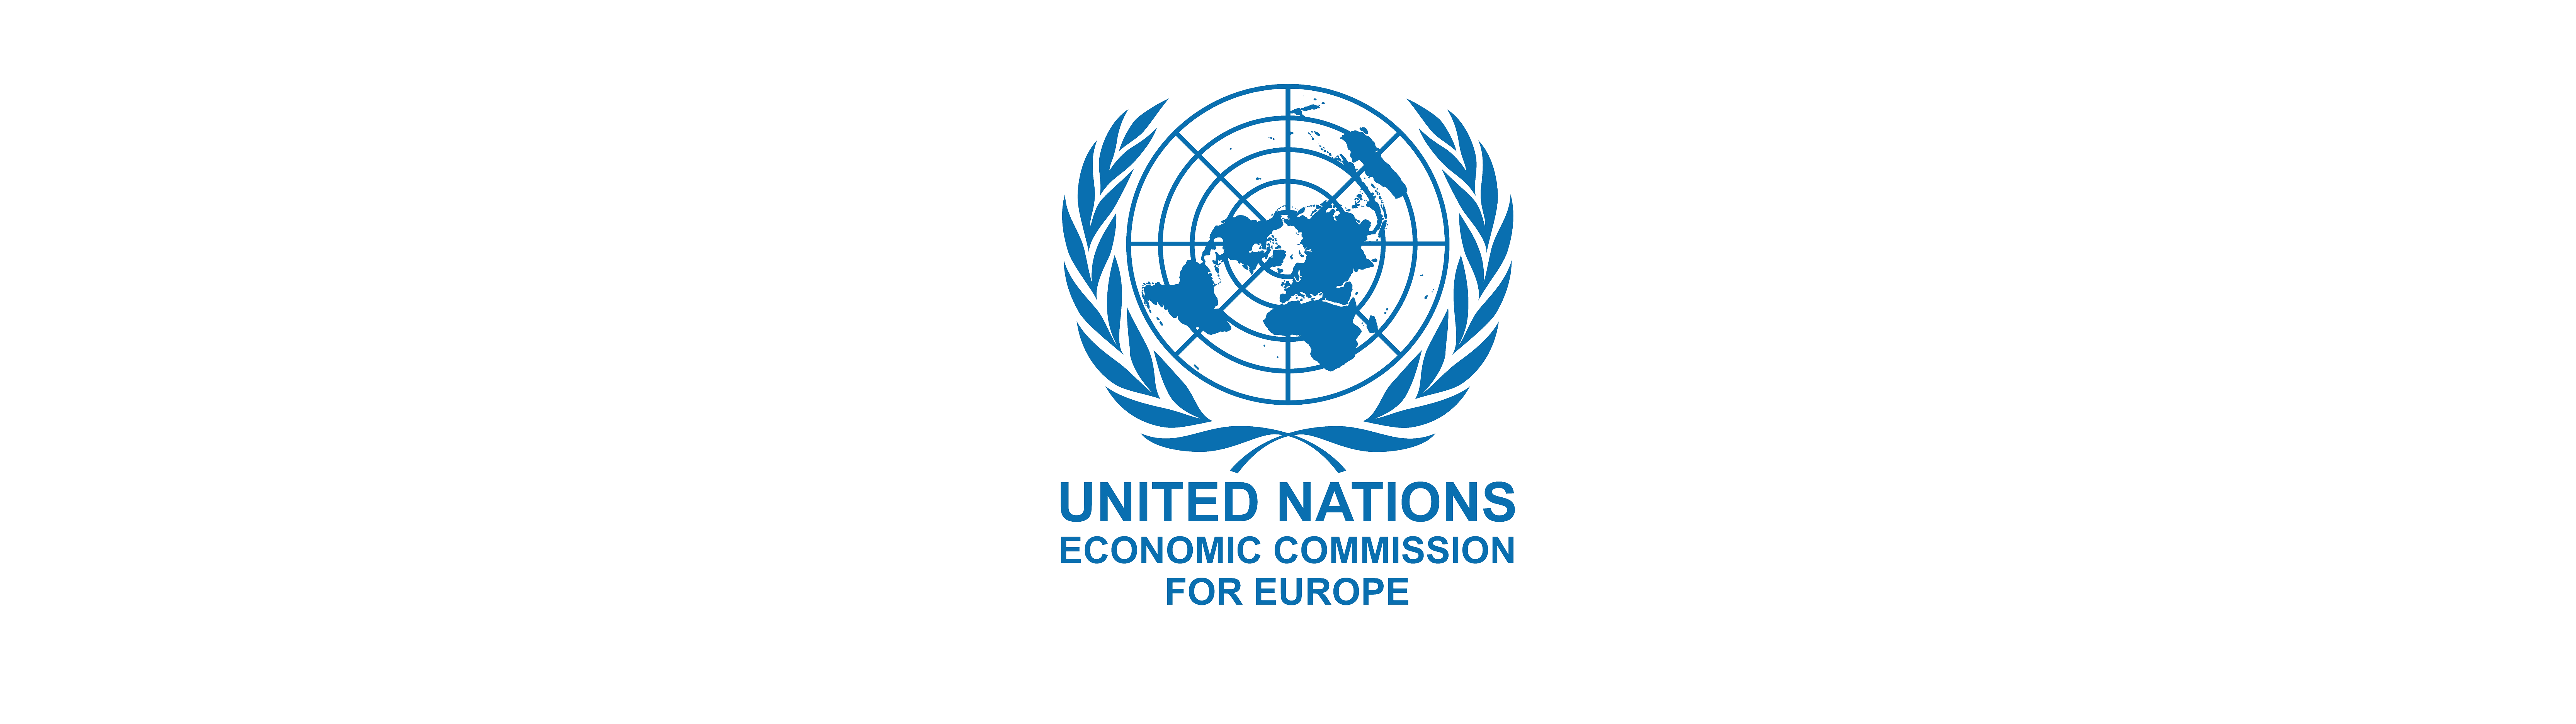 Экономические комиссии оон. Европейская комиссия ООН. Экономическая комиссия ООН. Лого европейской экономической комиссии ООН. Логотип ООН.